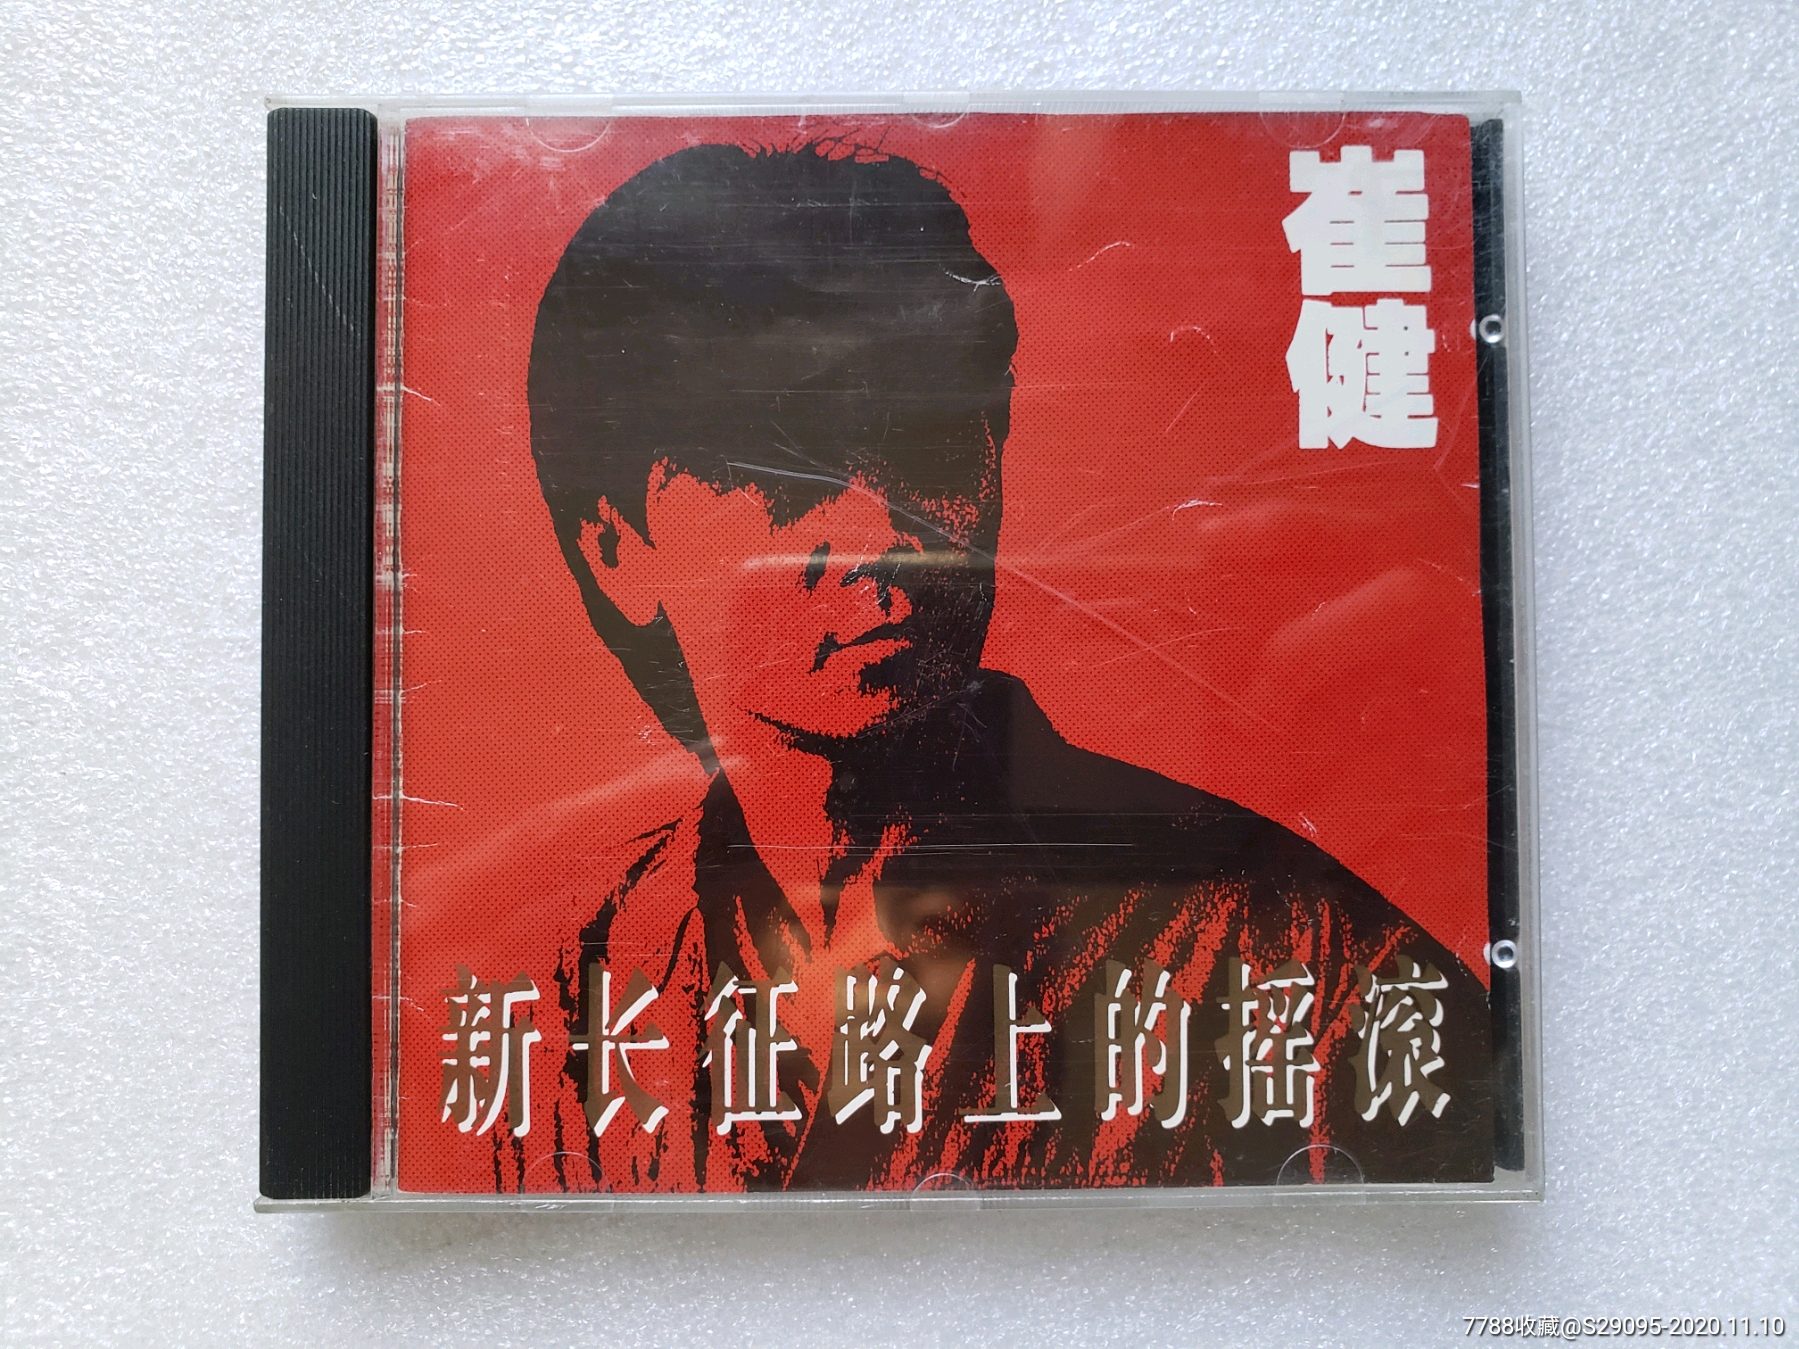 崔健新长征路上的摇滚深飞银圈版cd